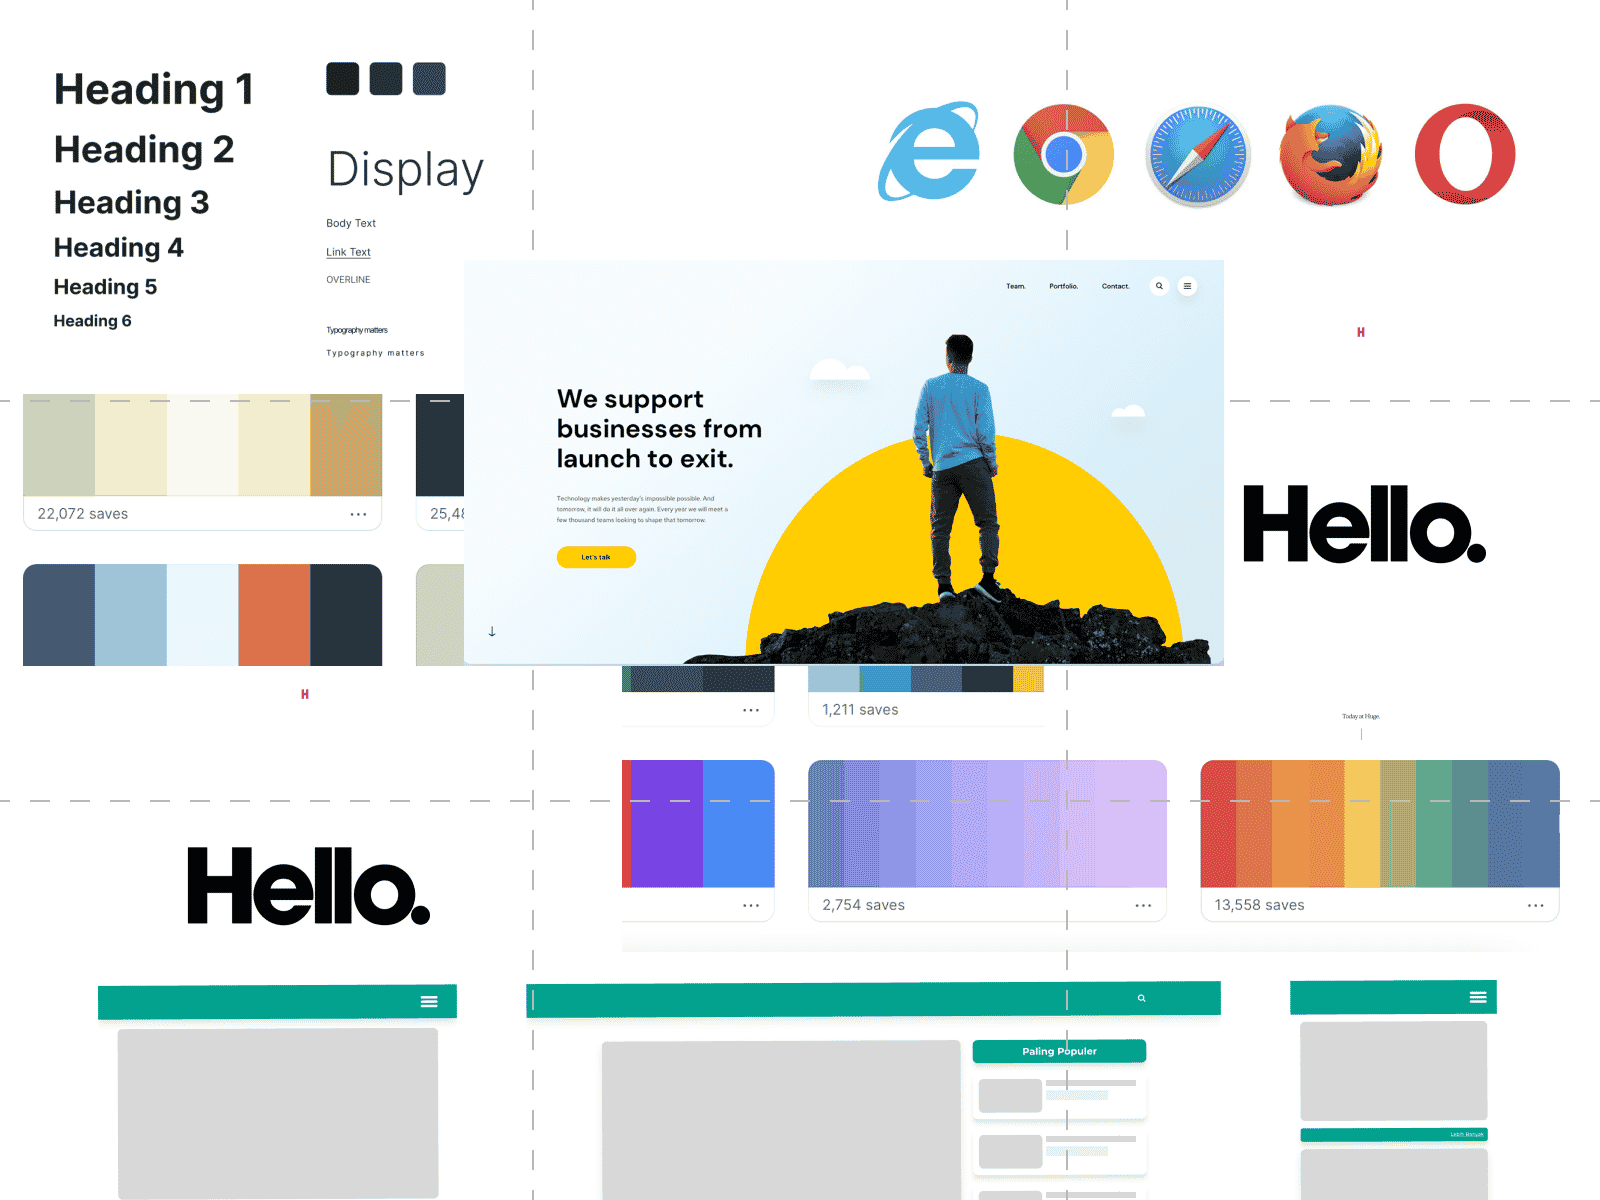 Web design elements